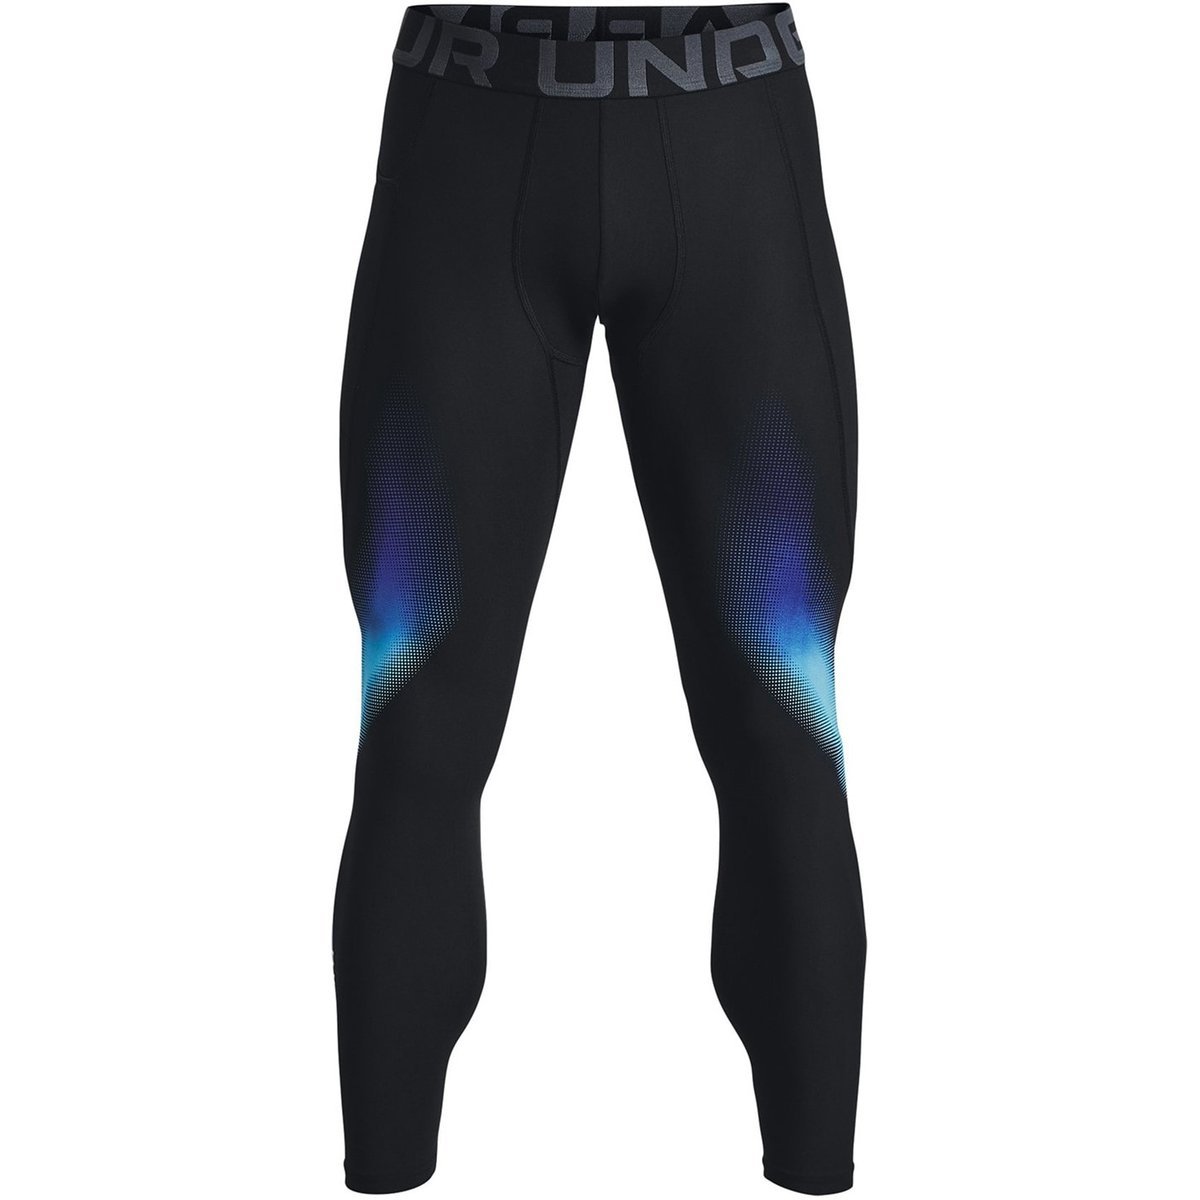 Mens compression 7/8 leggings Under Armour UA HG ARMOUR CAMO LGS black